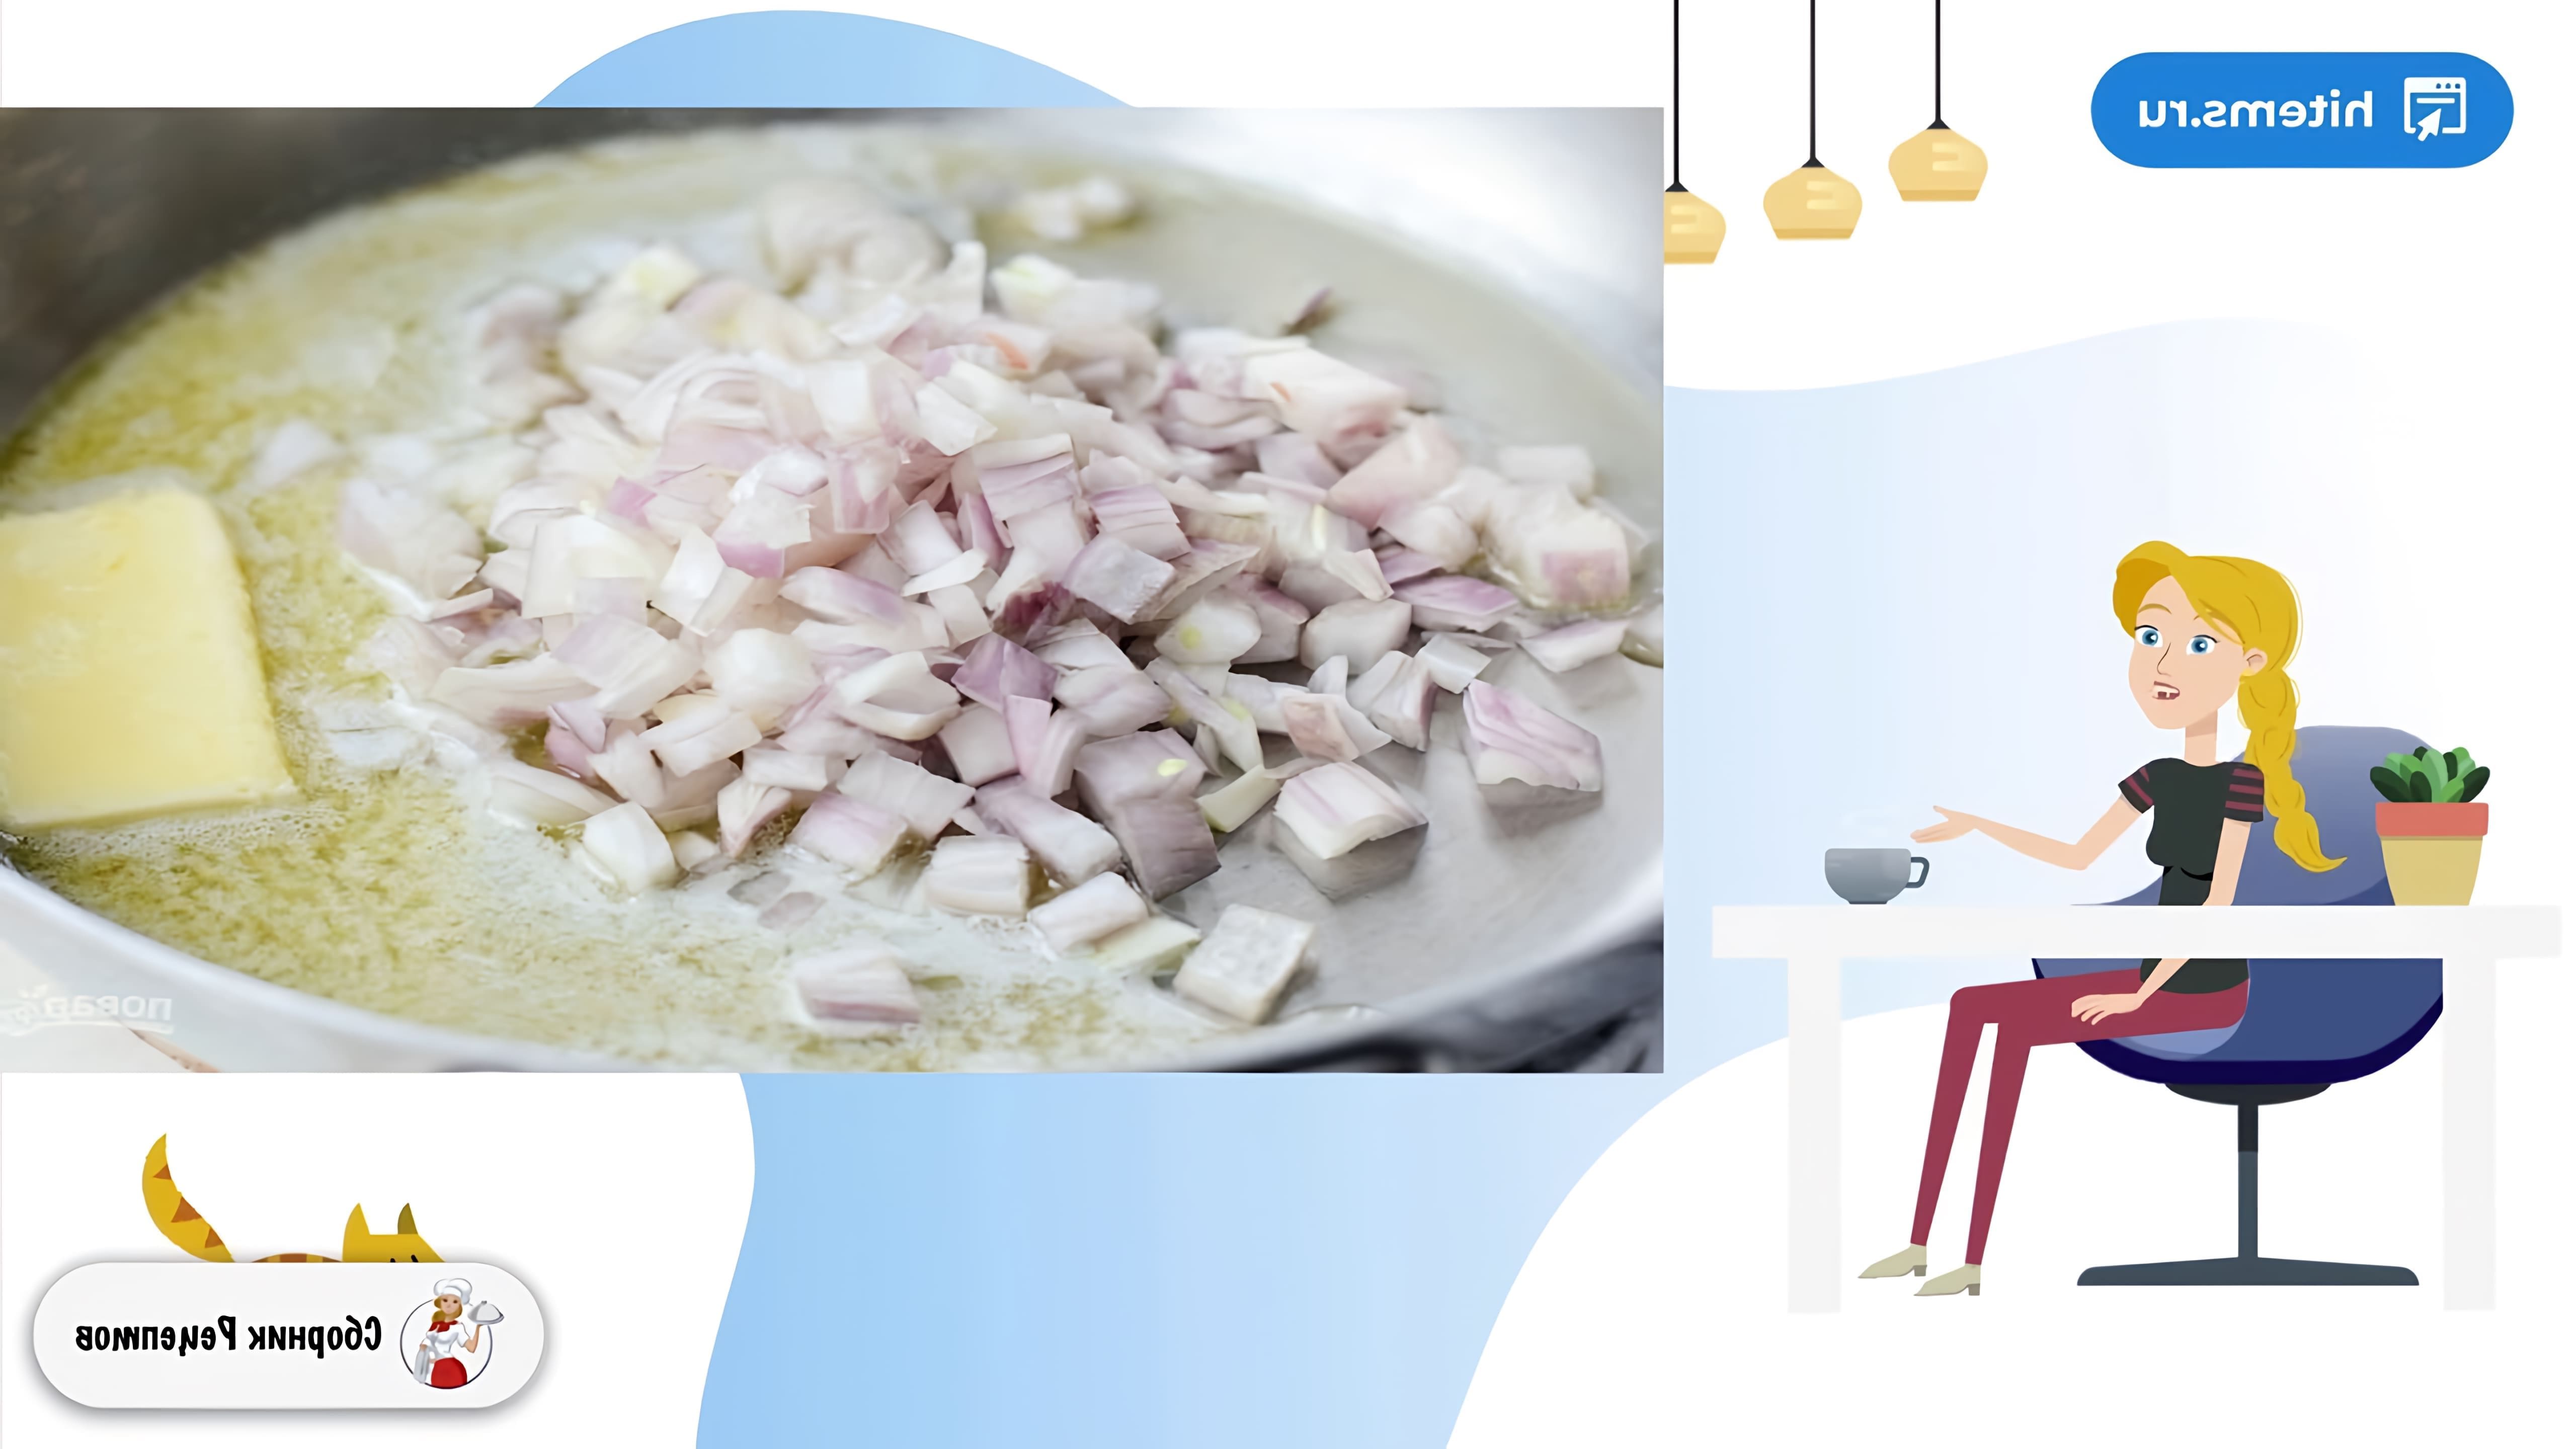 В этом видео демонстрируется рецепт приготовления картофеля со сметаной и сыром в духовке